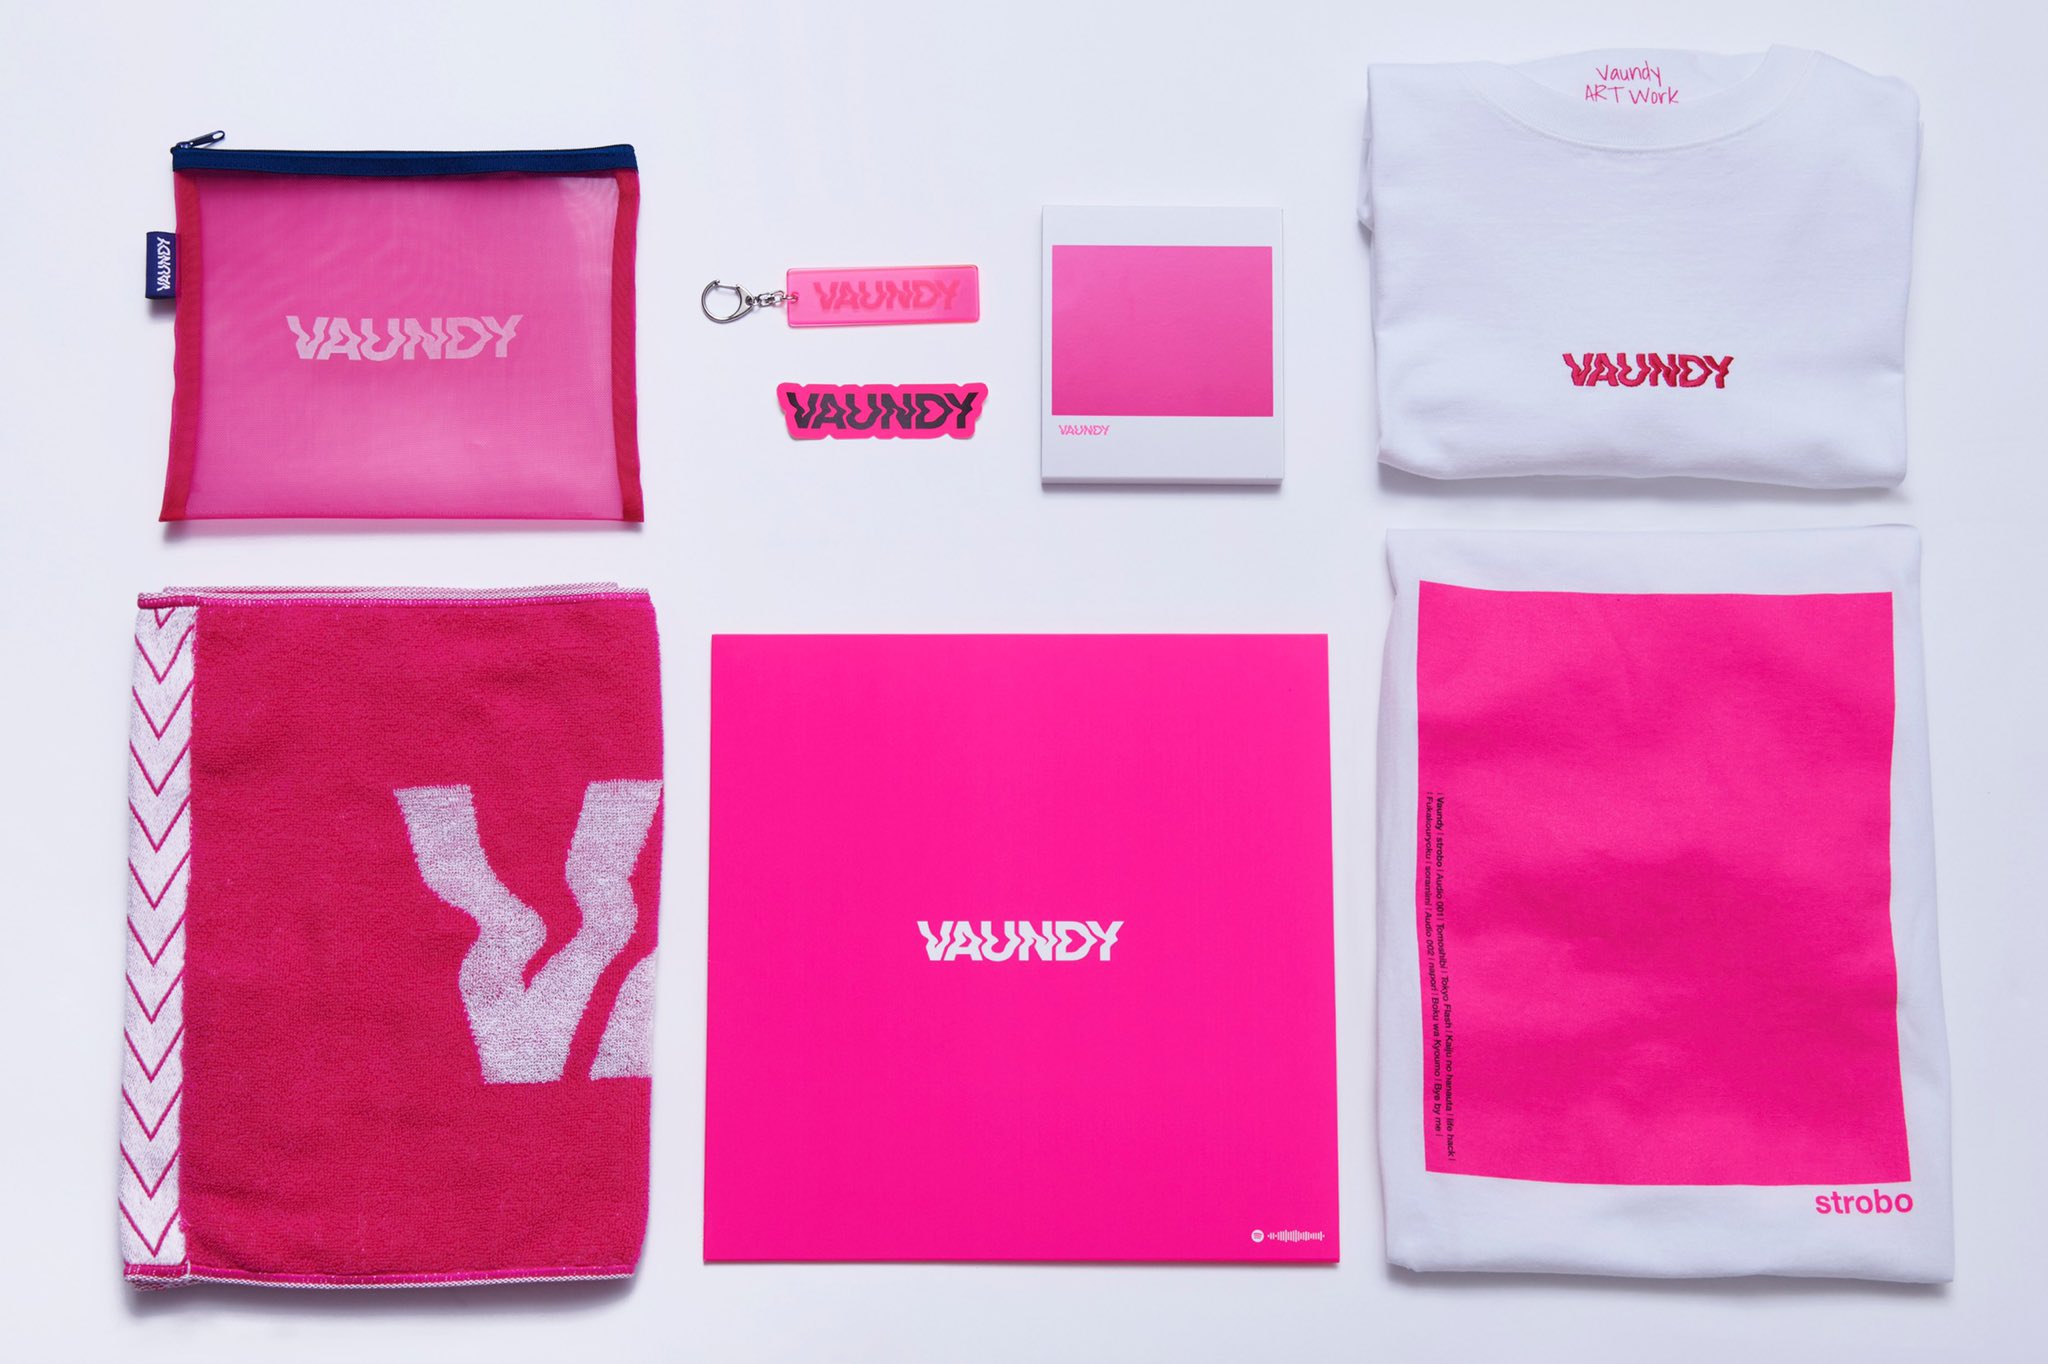 ポップス/ロック(邦楽)Vaundy strobo+ アナログ盤 アルバム レコード LP バウンディ